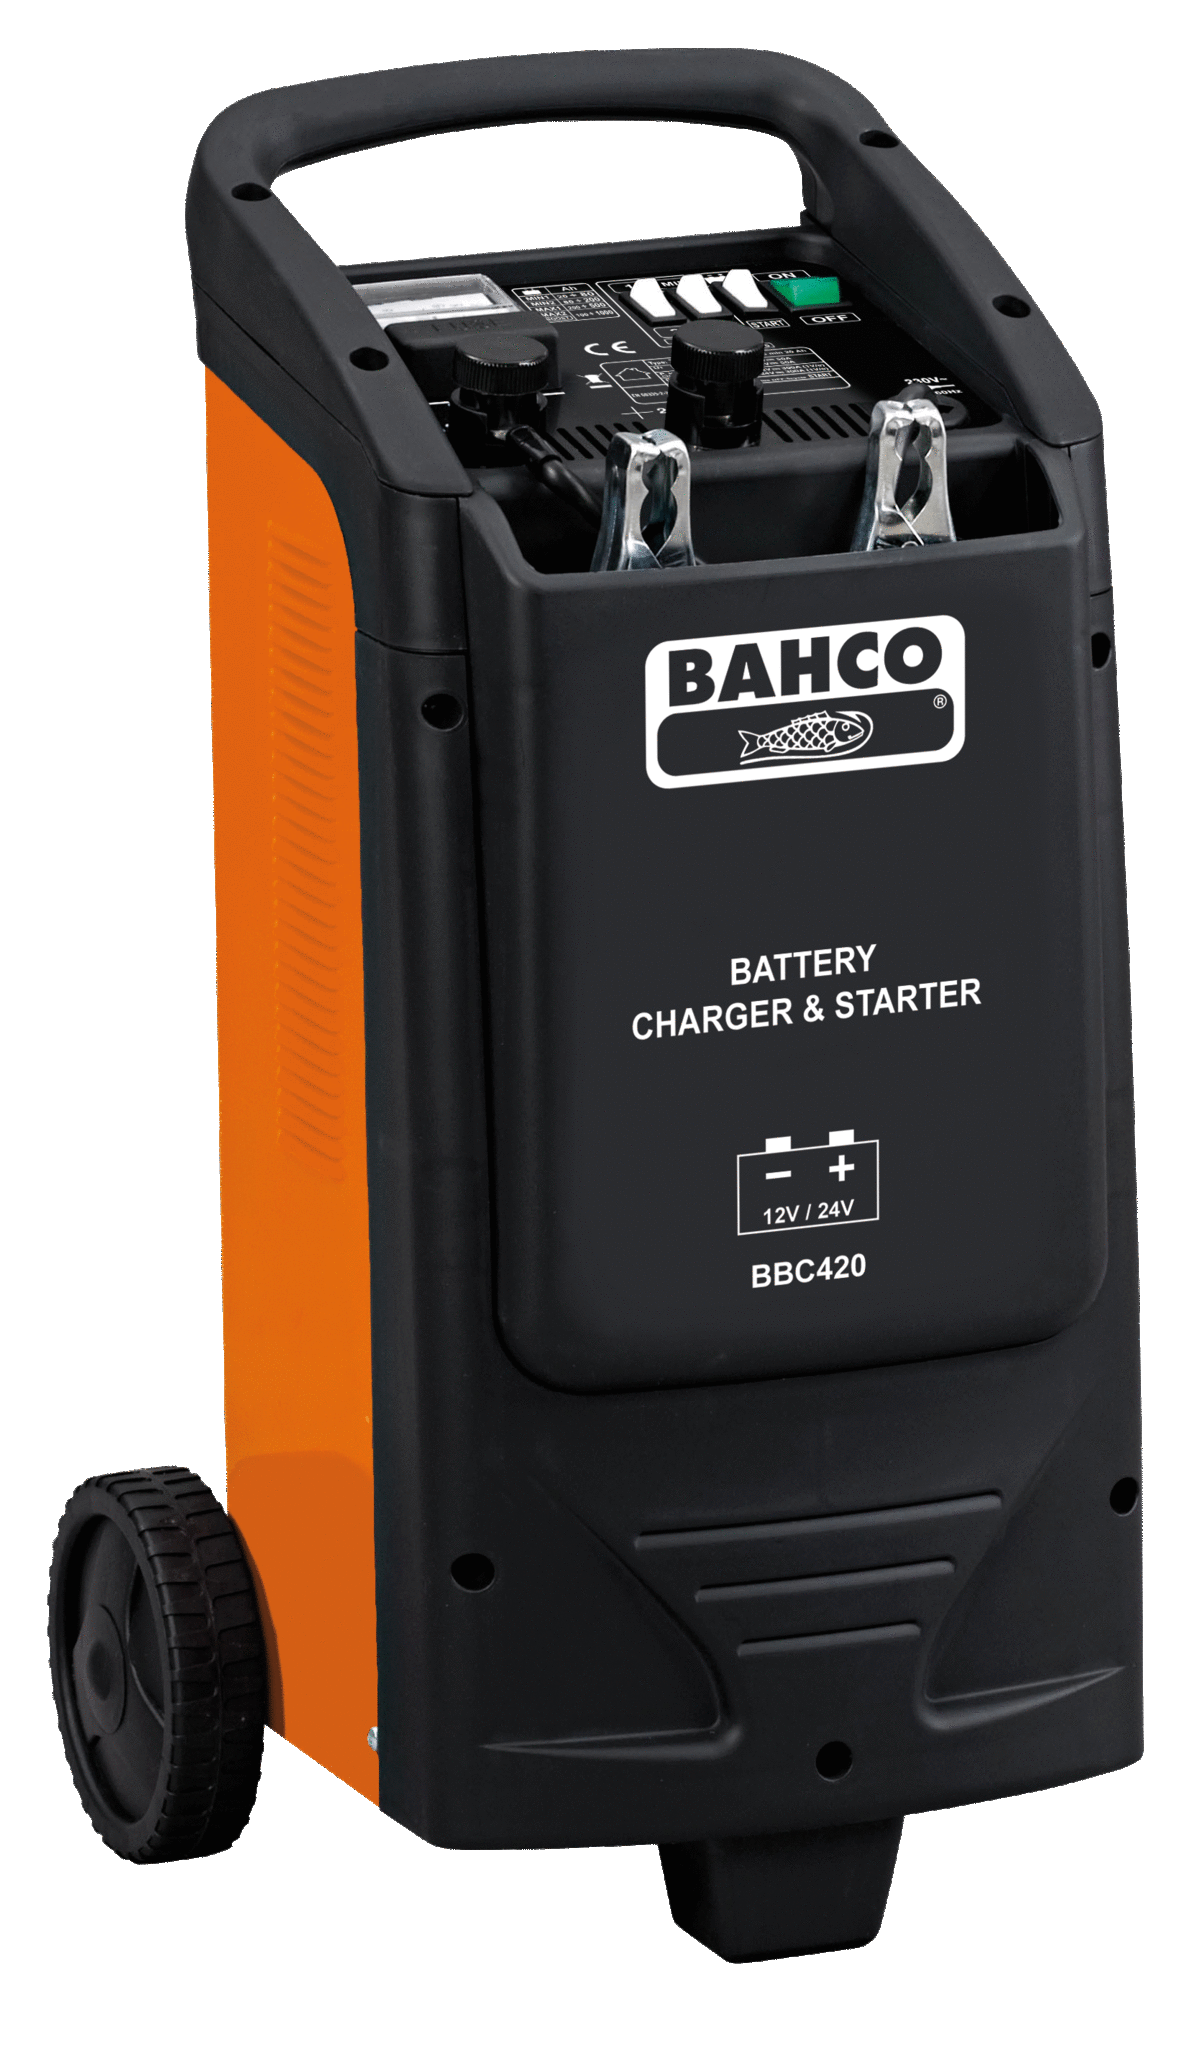 Arrancador cargador de baterías - www.